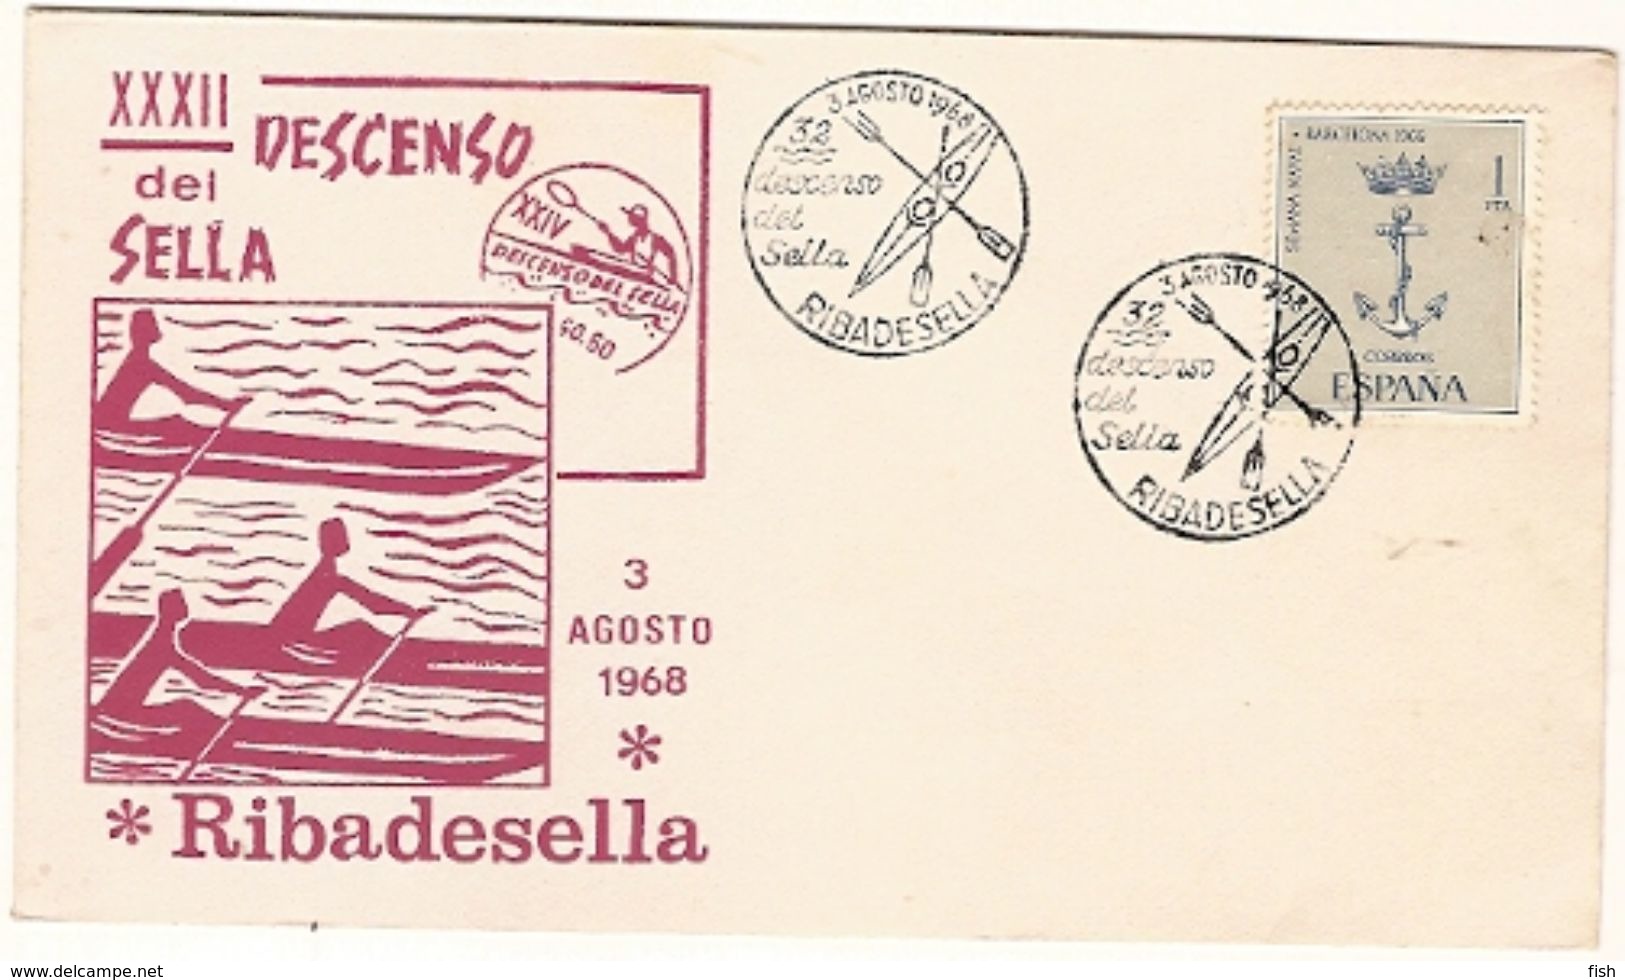 Spain  & FDC  XXXII Descenso Internacional Del Sella, Riba De Sella 1968 (425) - Kanu